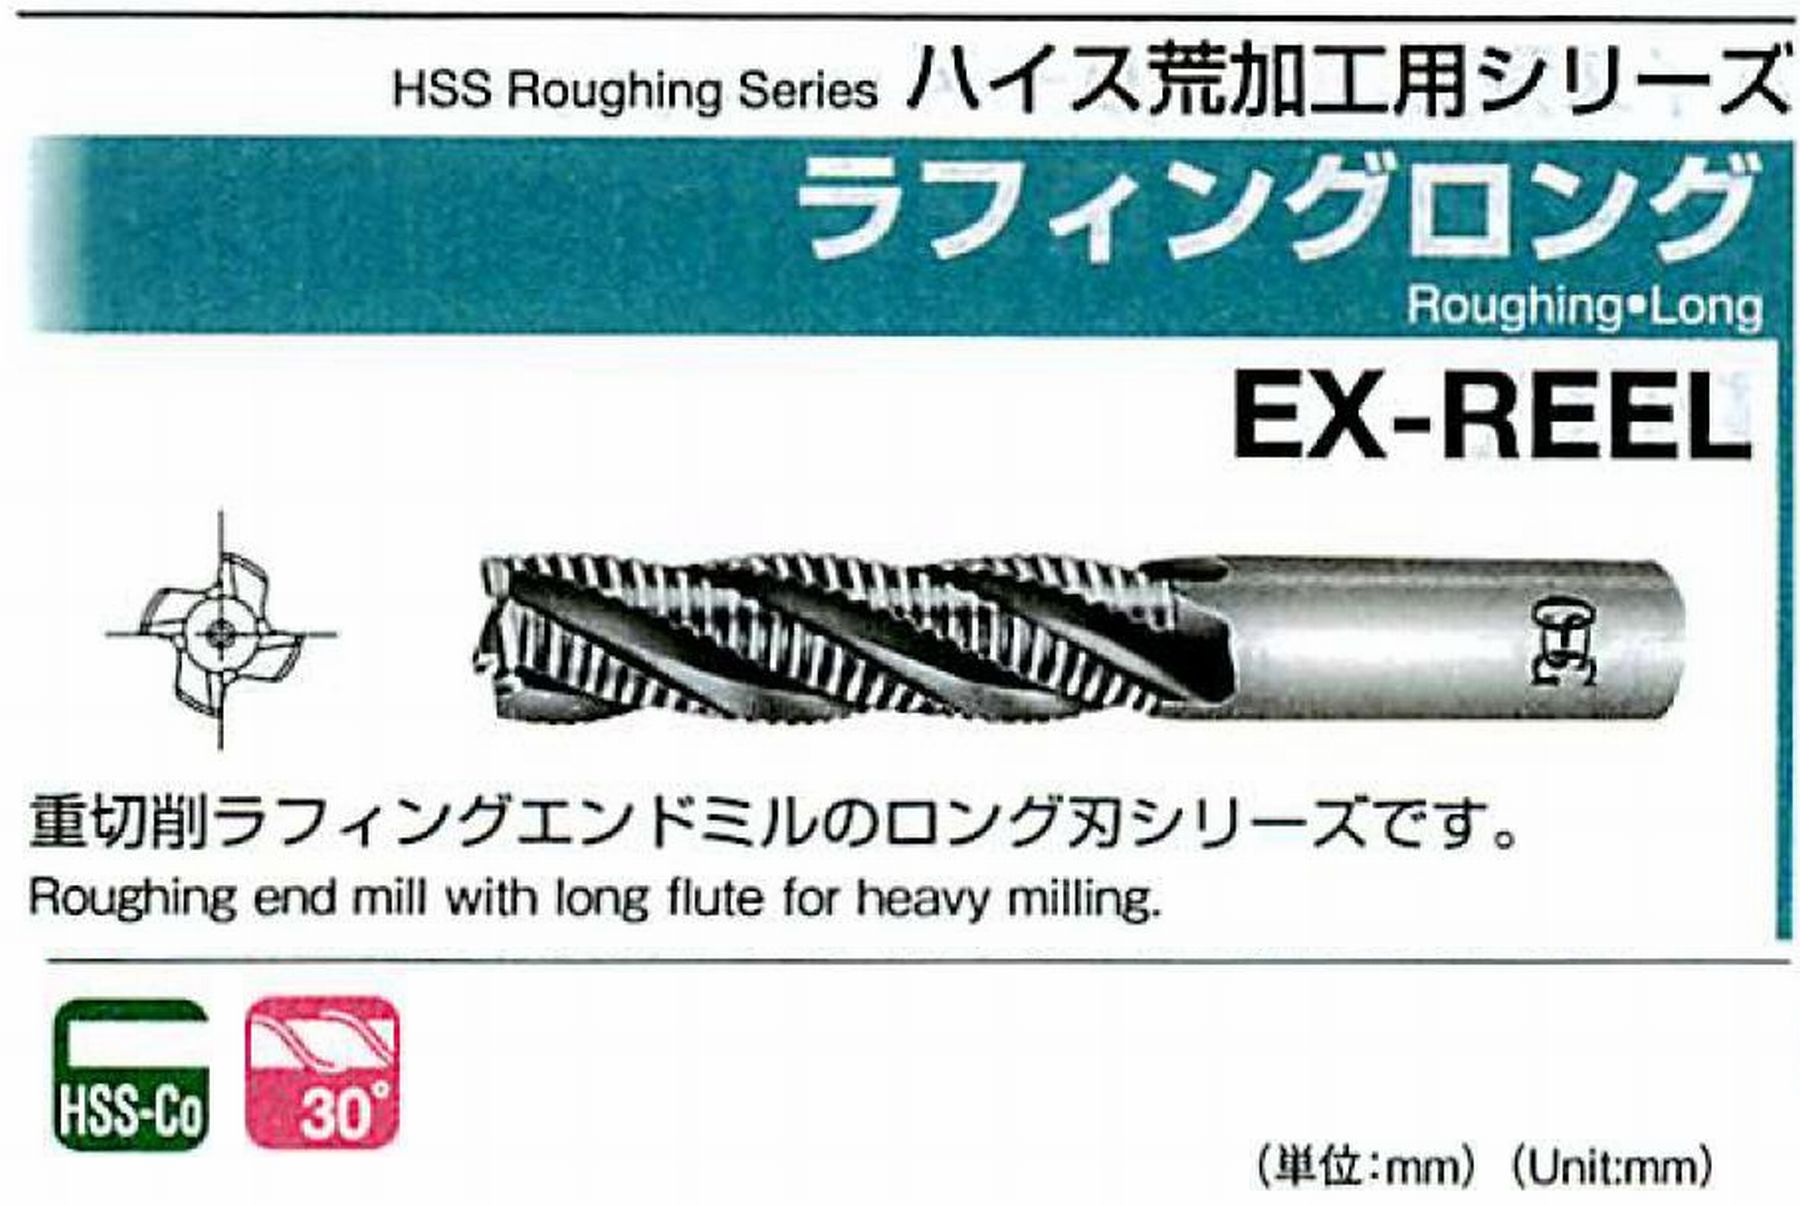 オーエスジー/OSG ラフィング ロング EX-REEL 外径6 全長68 刃長24 シャンク径6mm 刃数4